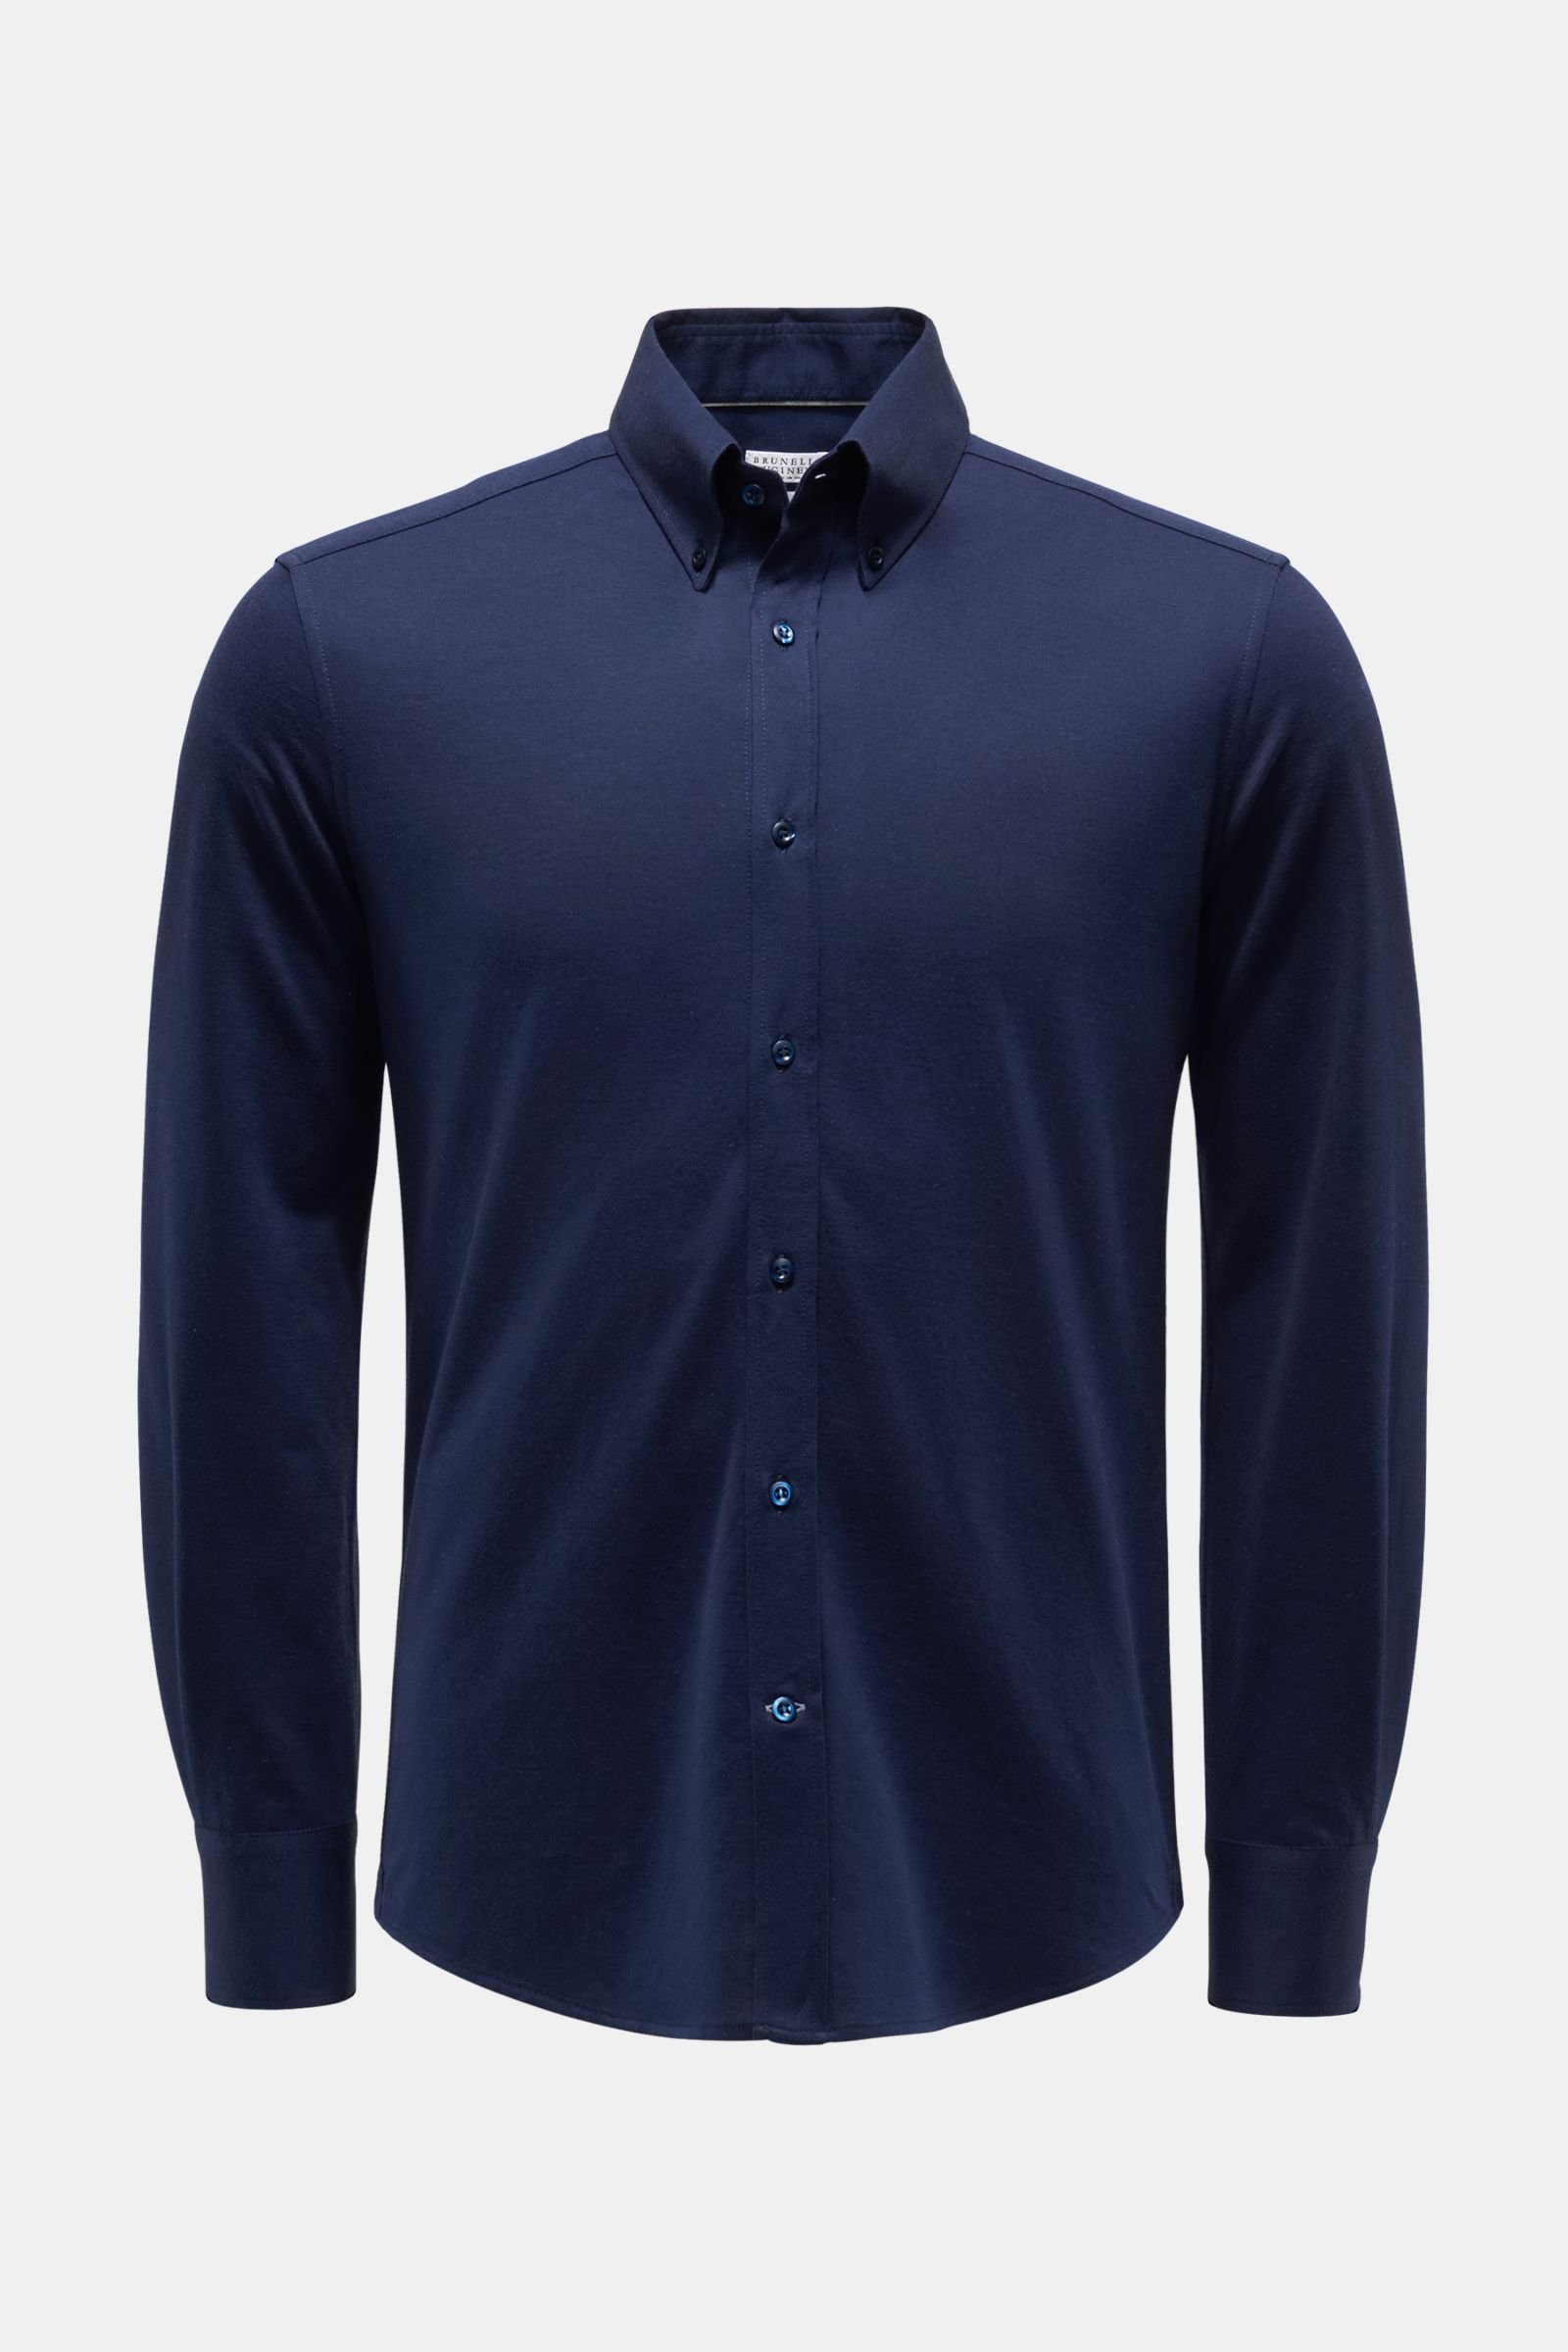 Jersey shirt button-down collar navy